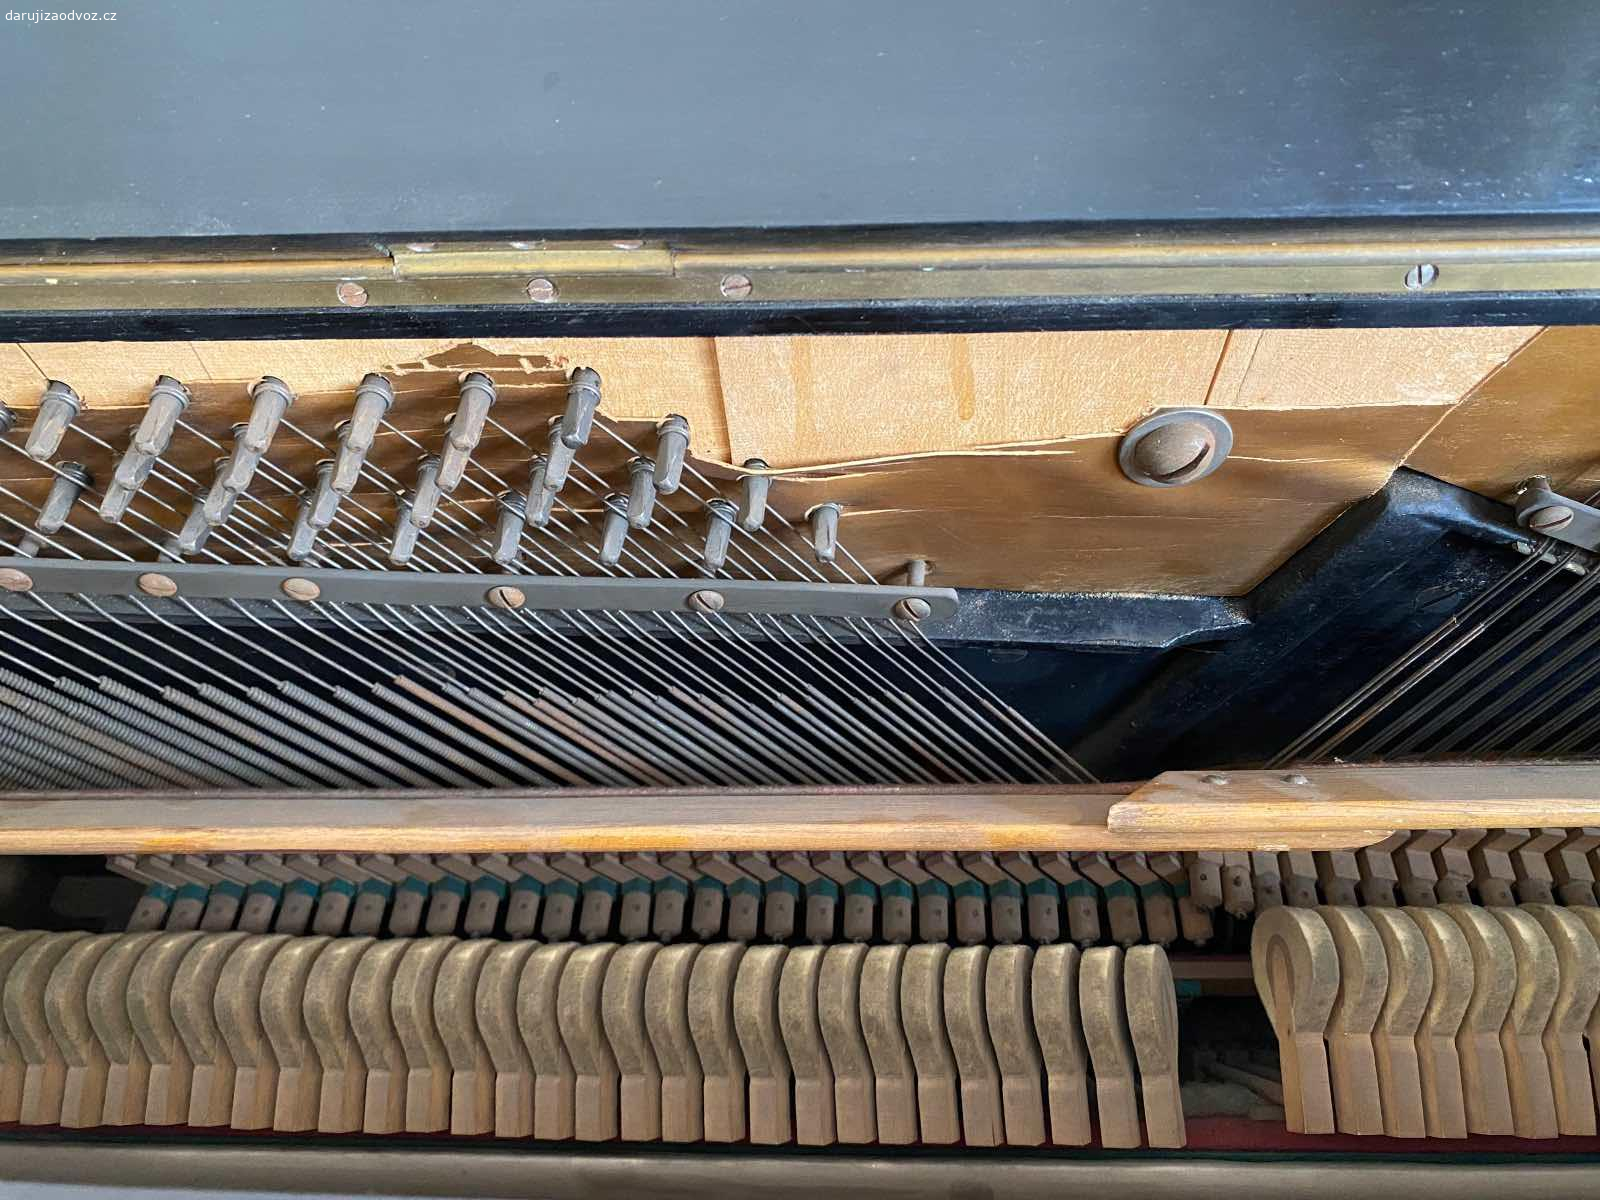 Pianino za odvoz. Daruji za odvoz nádherné historické pianino rakouské výroby J. Nemetschke Wein, stav viz foto, naprasklá zadní deska.